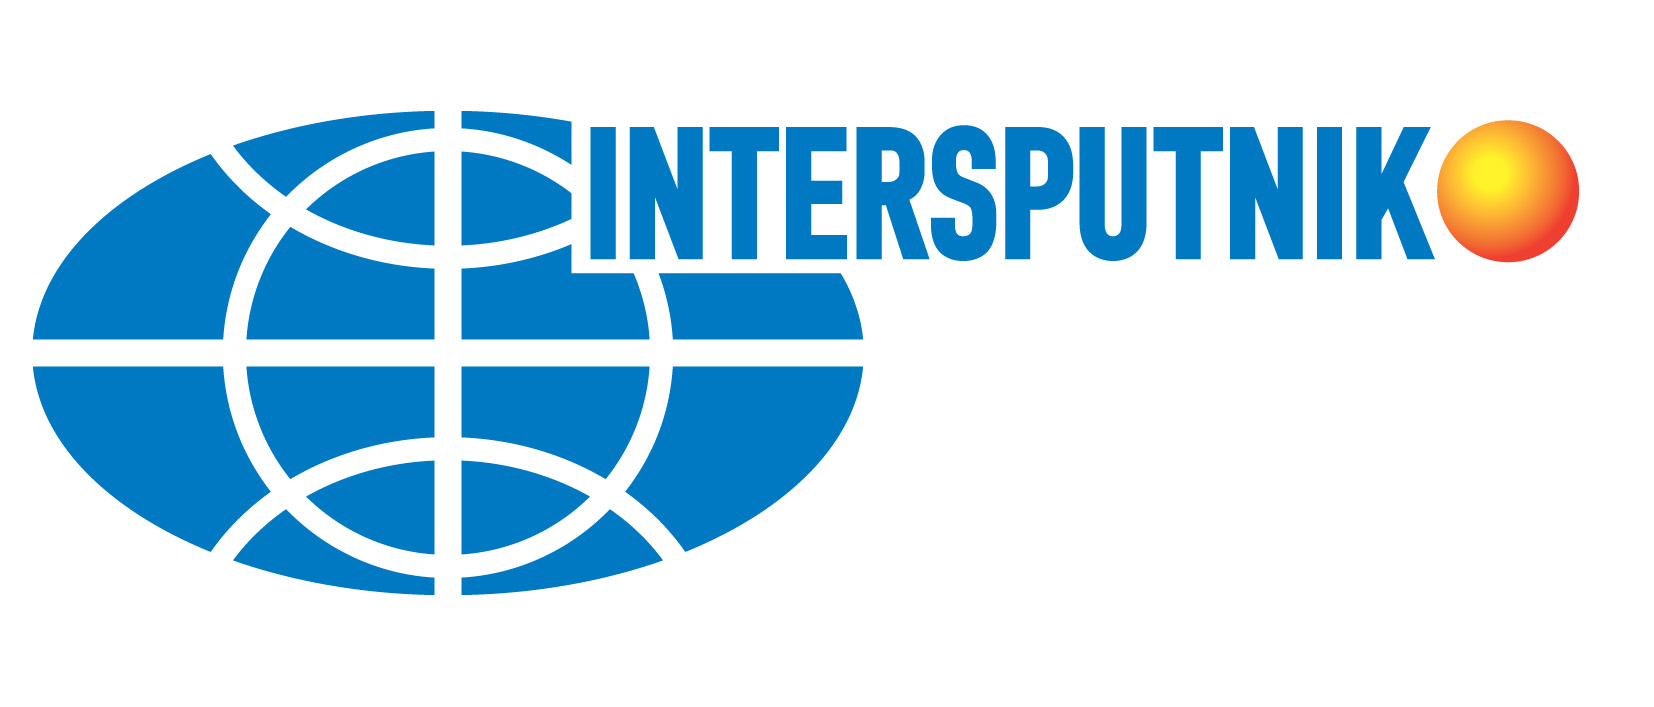 Интерспутник МОКС - Международная организация космической связи - Intersputnik Holding